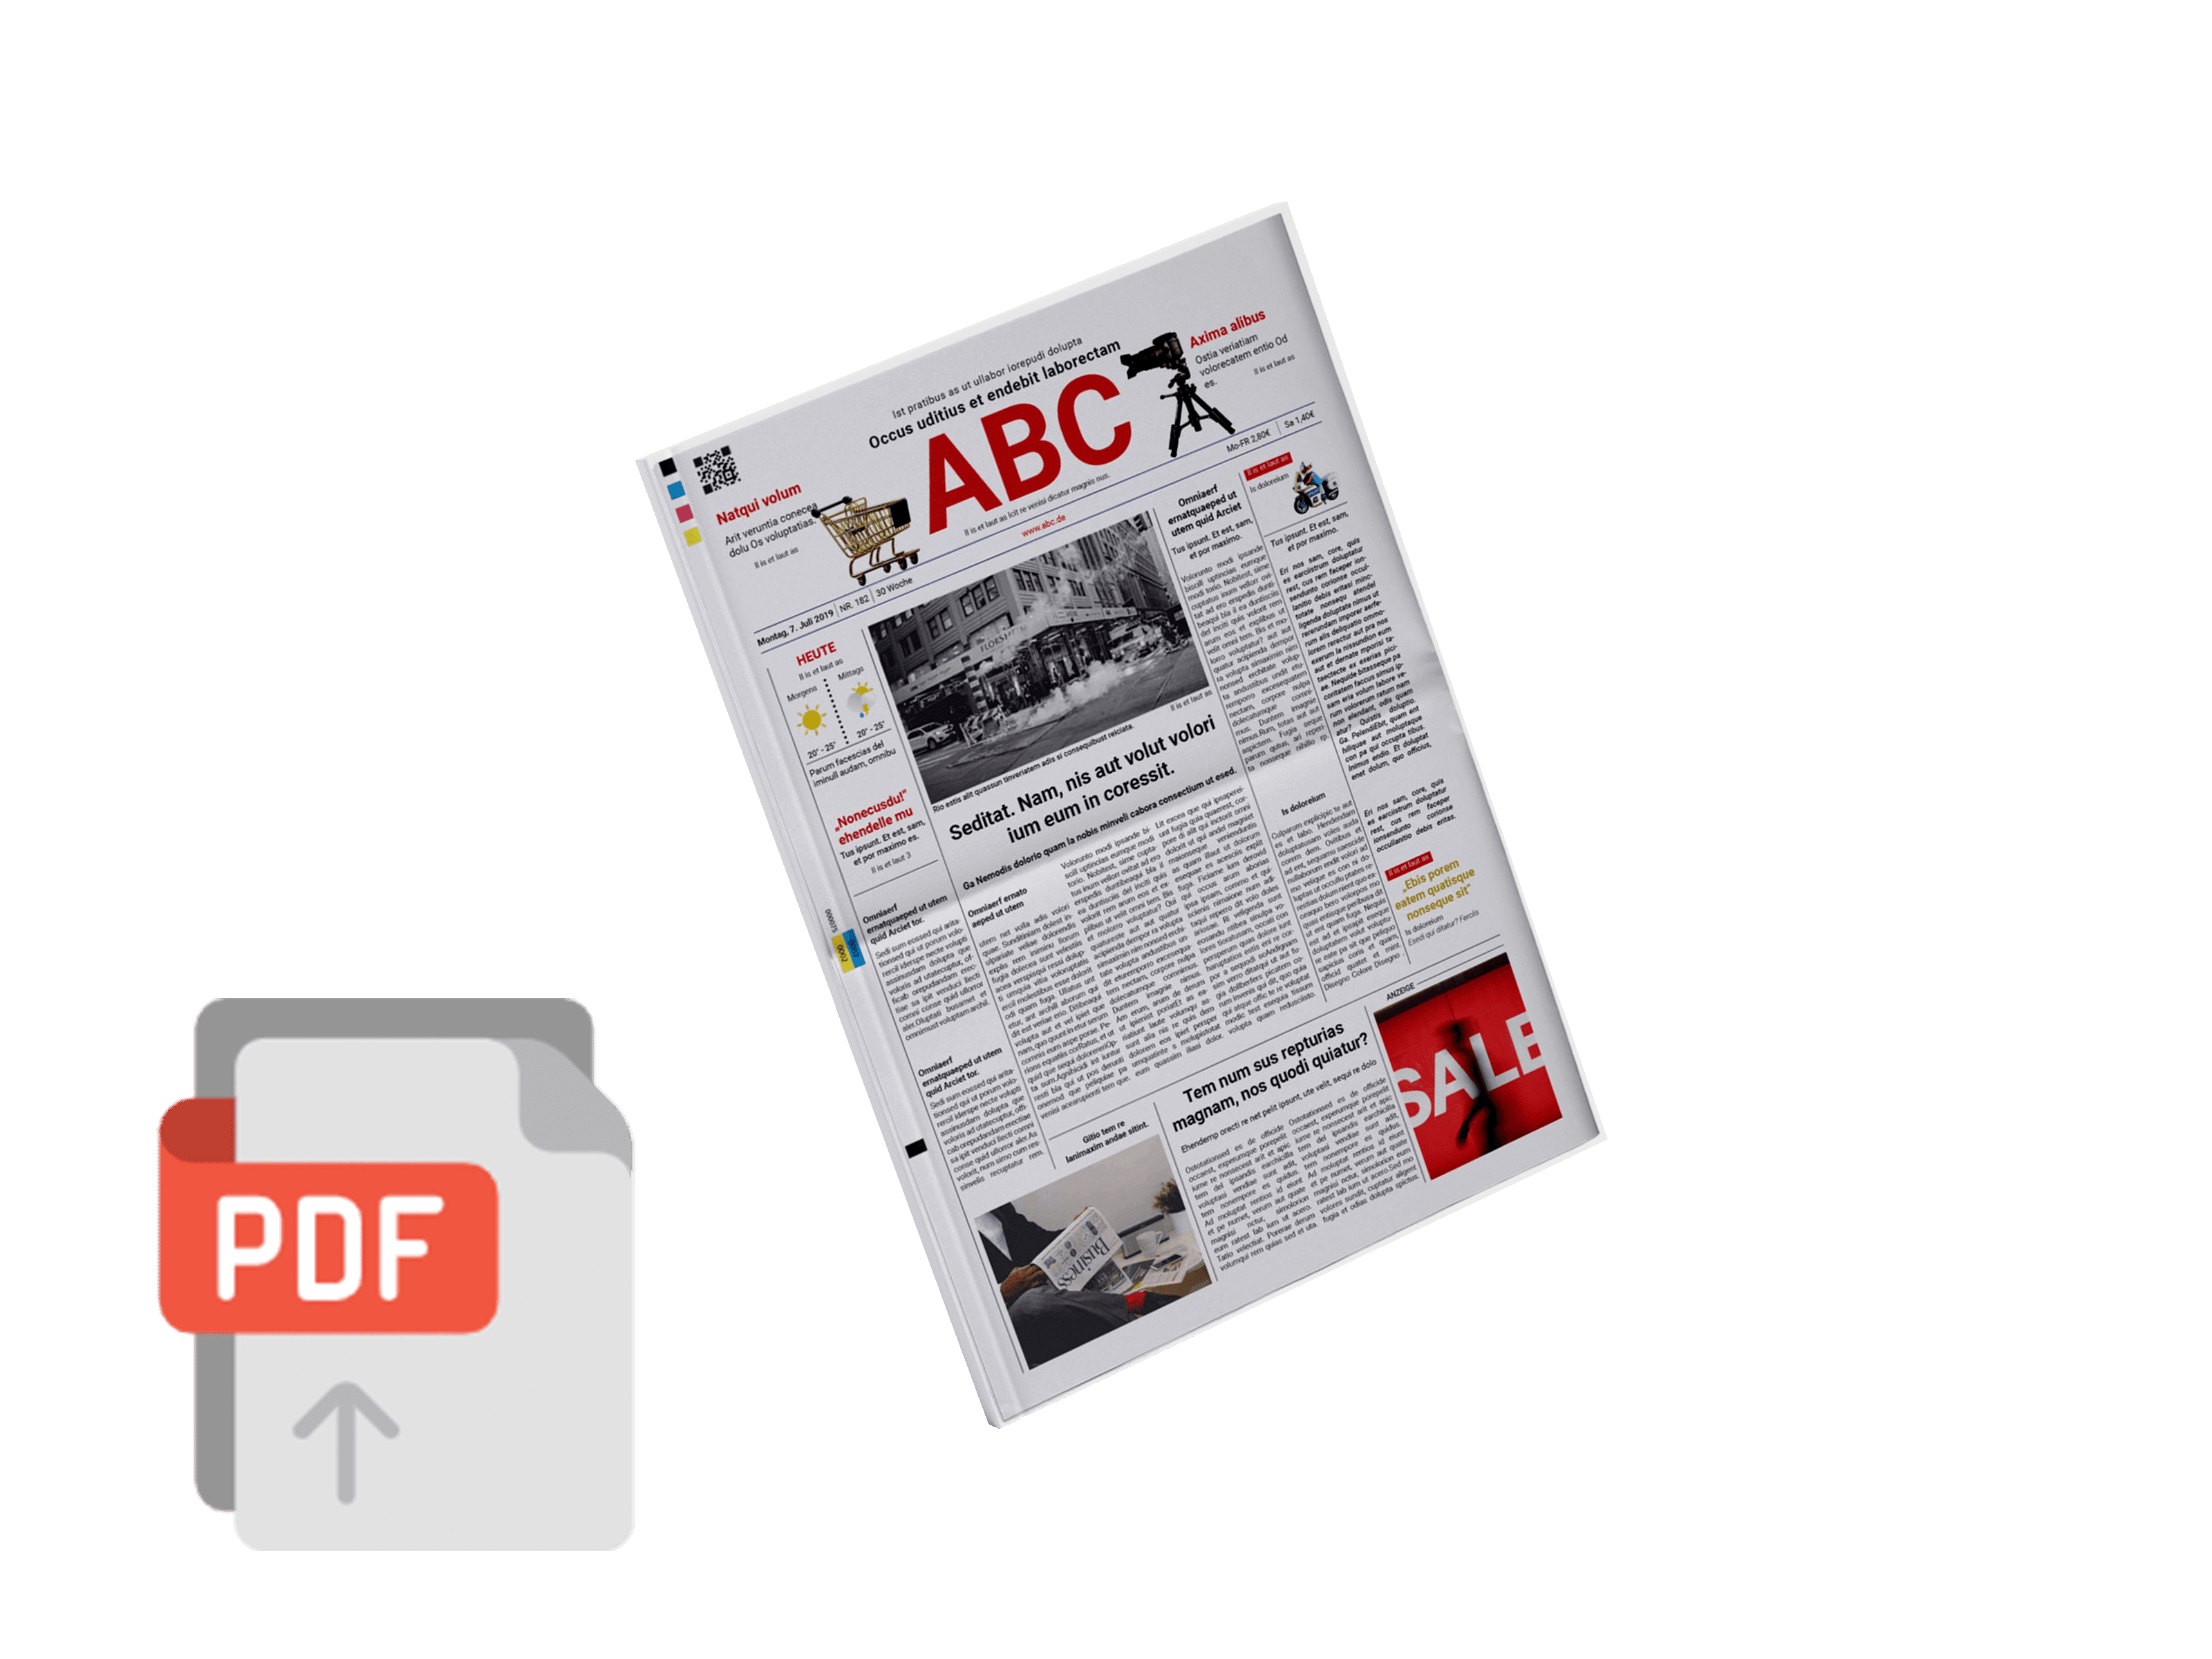 PDF als authentische Tageszeitung drucken lassen